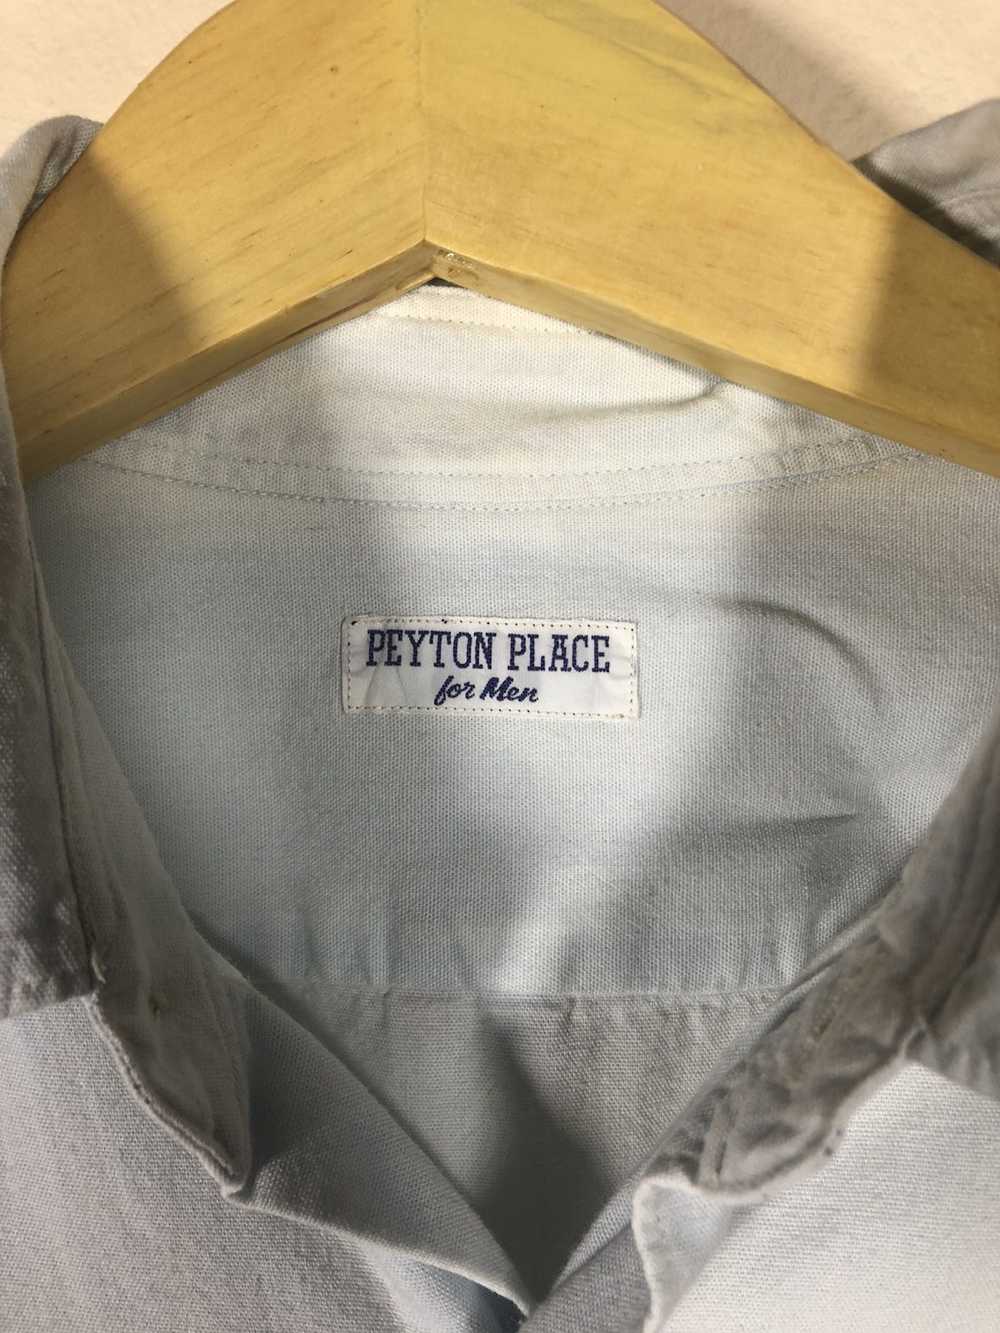 PPFM Peyton place for men shirt button up - image 4